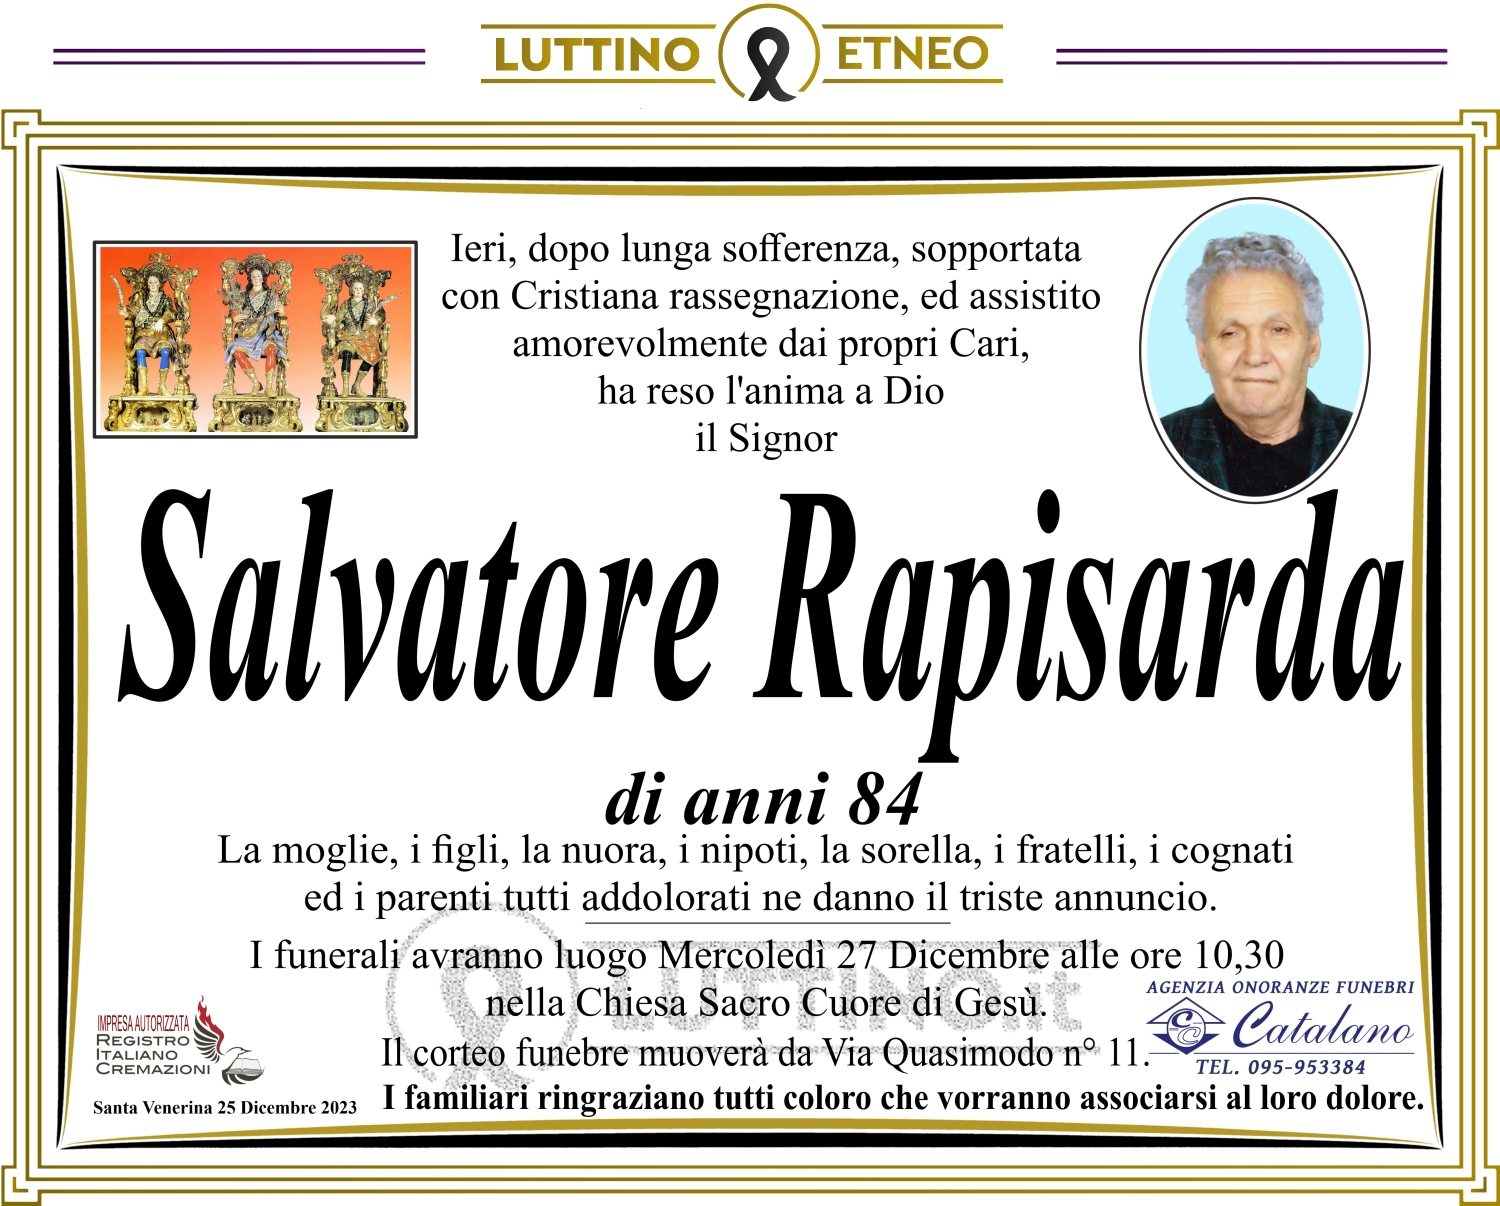 Salvatore Rapisarda